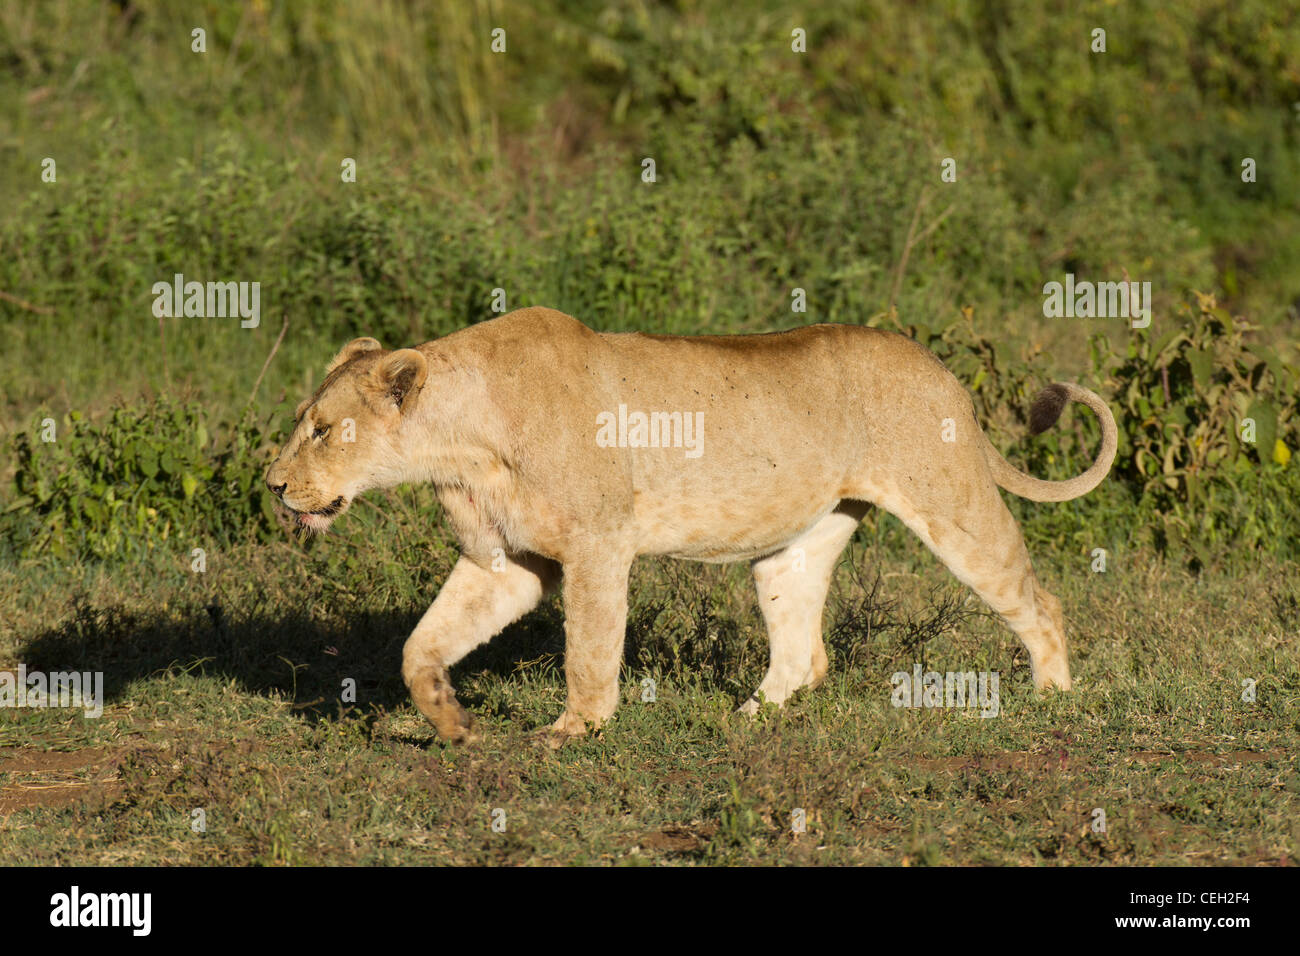 León caminar a través de la hierba (Panthera leo) Foto de stock